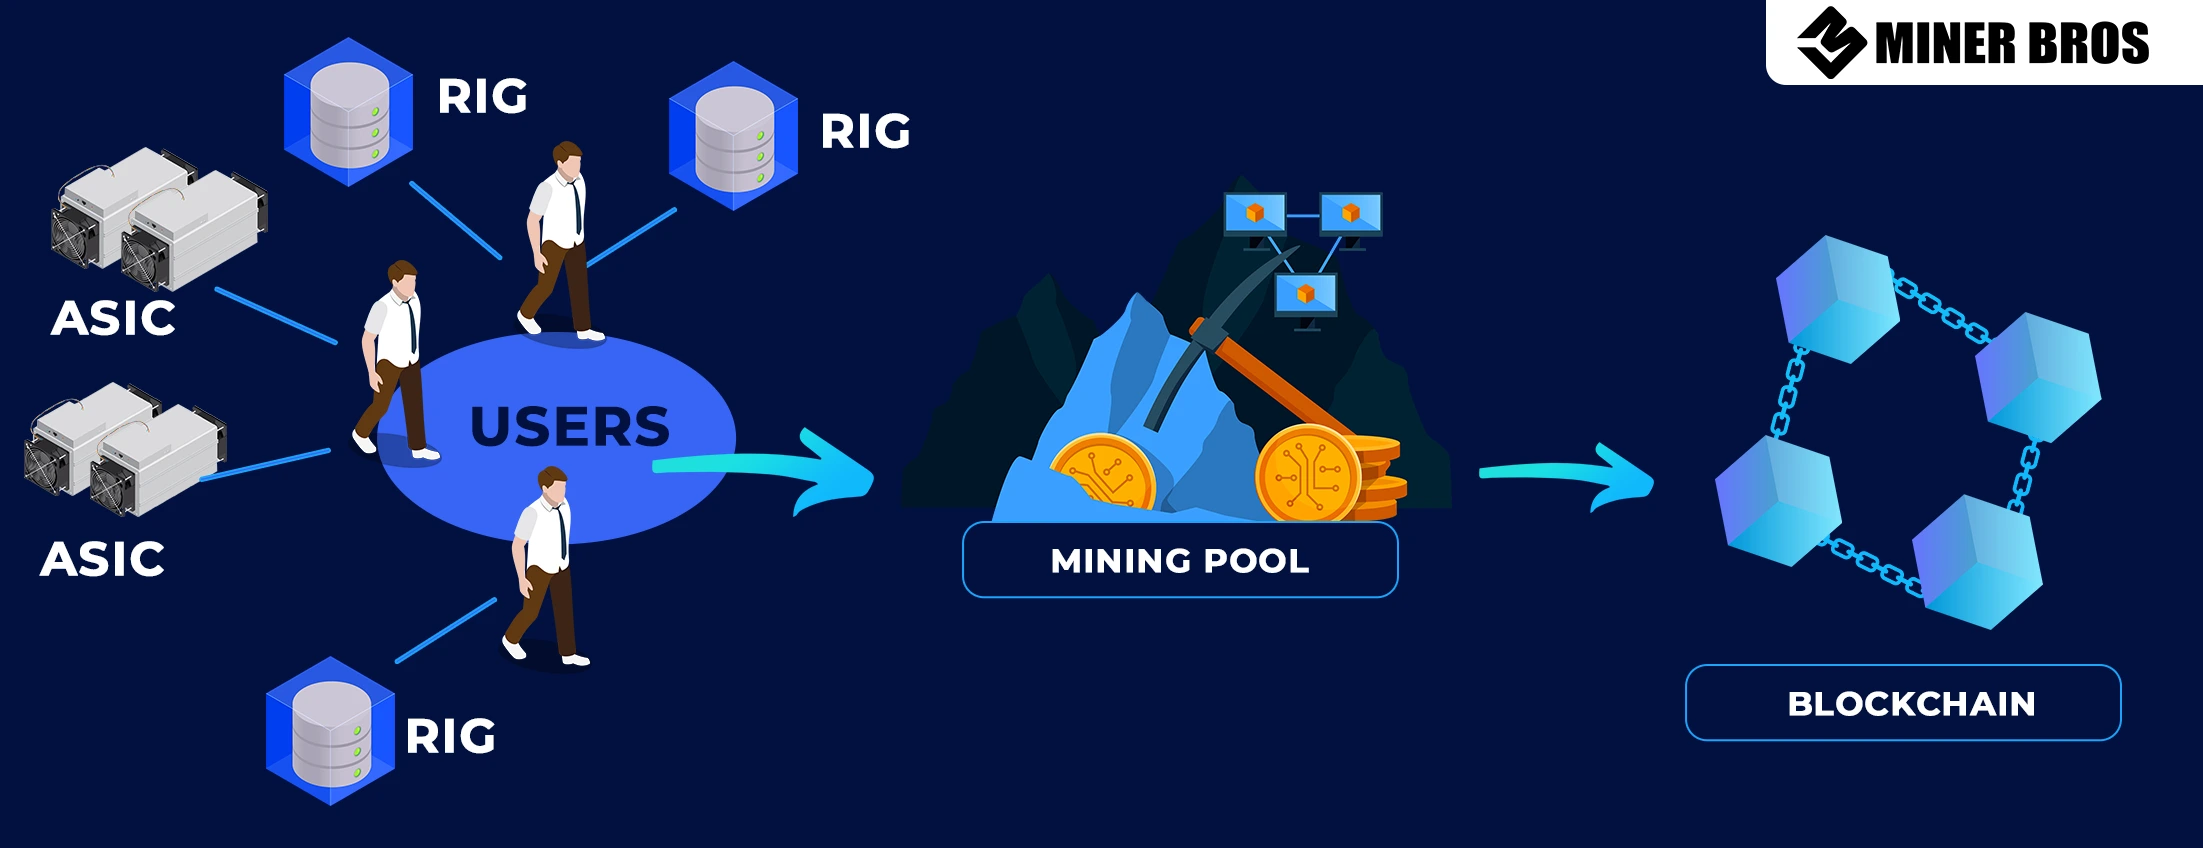 Professional mining pools cryptocurrencies - Baikalmine